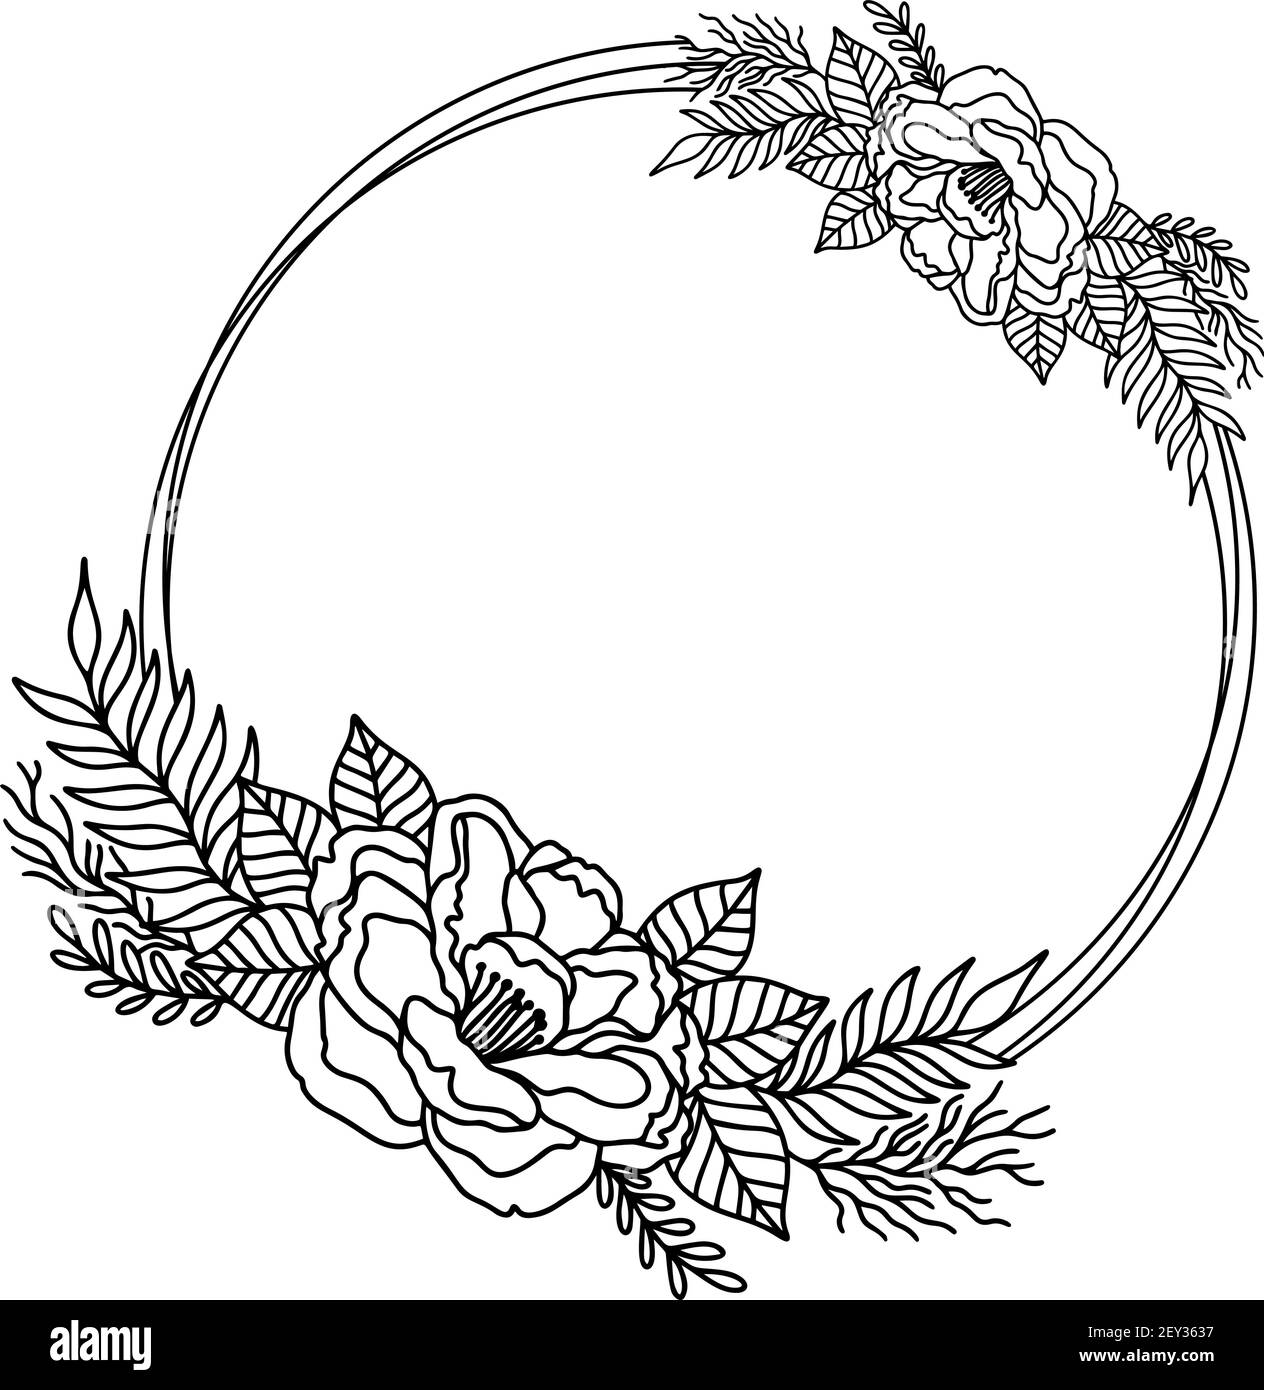 Salvation Definition folder Fiore cornice contorno doppio tondo.Floral cerchio bordo disegno botanico  stile Immagine e Vettoriale - Alamy